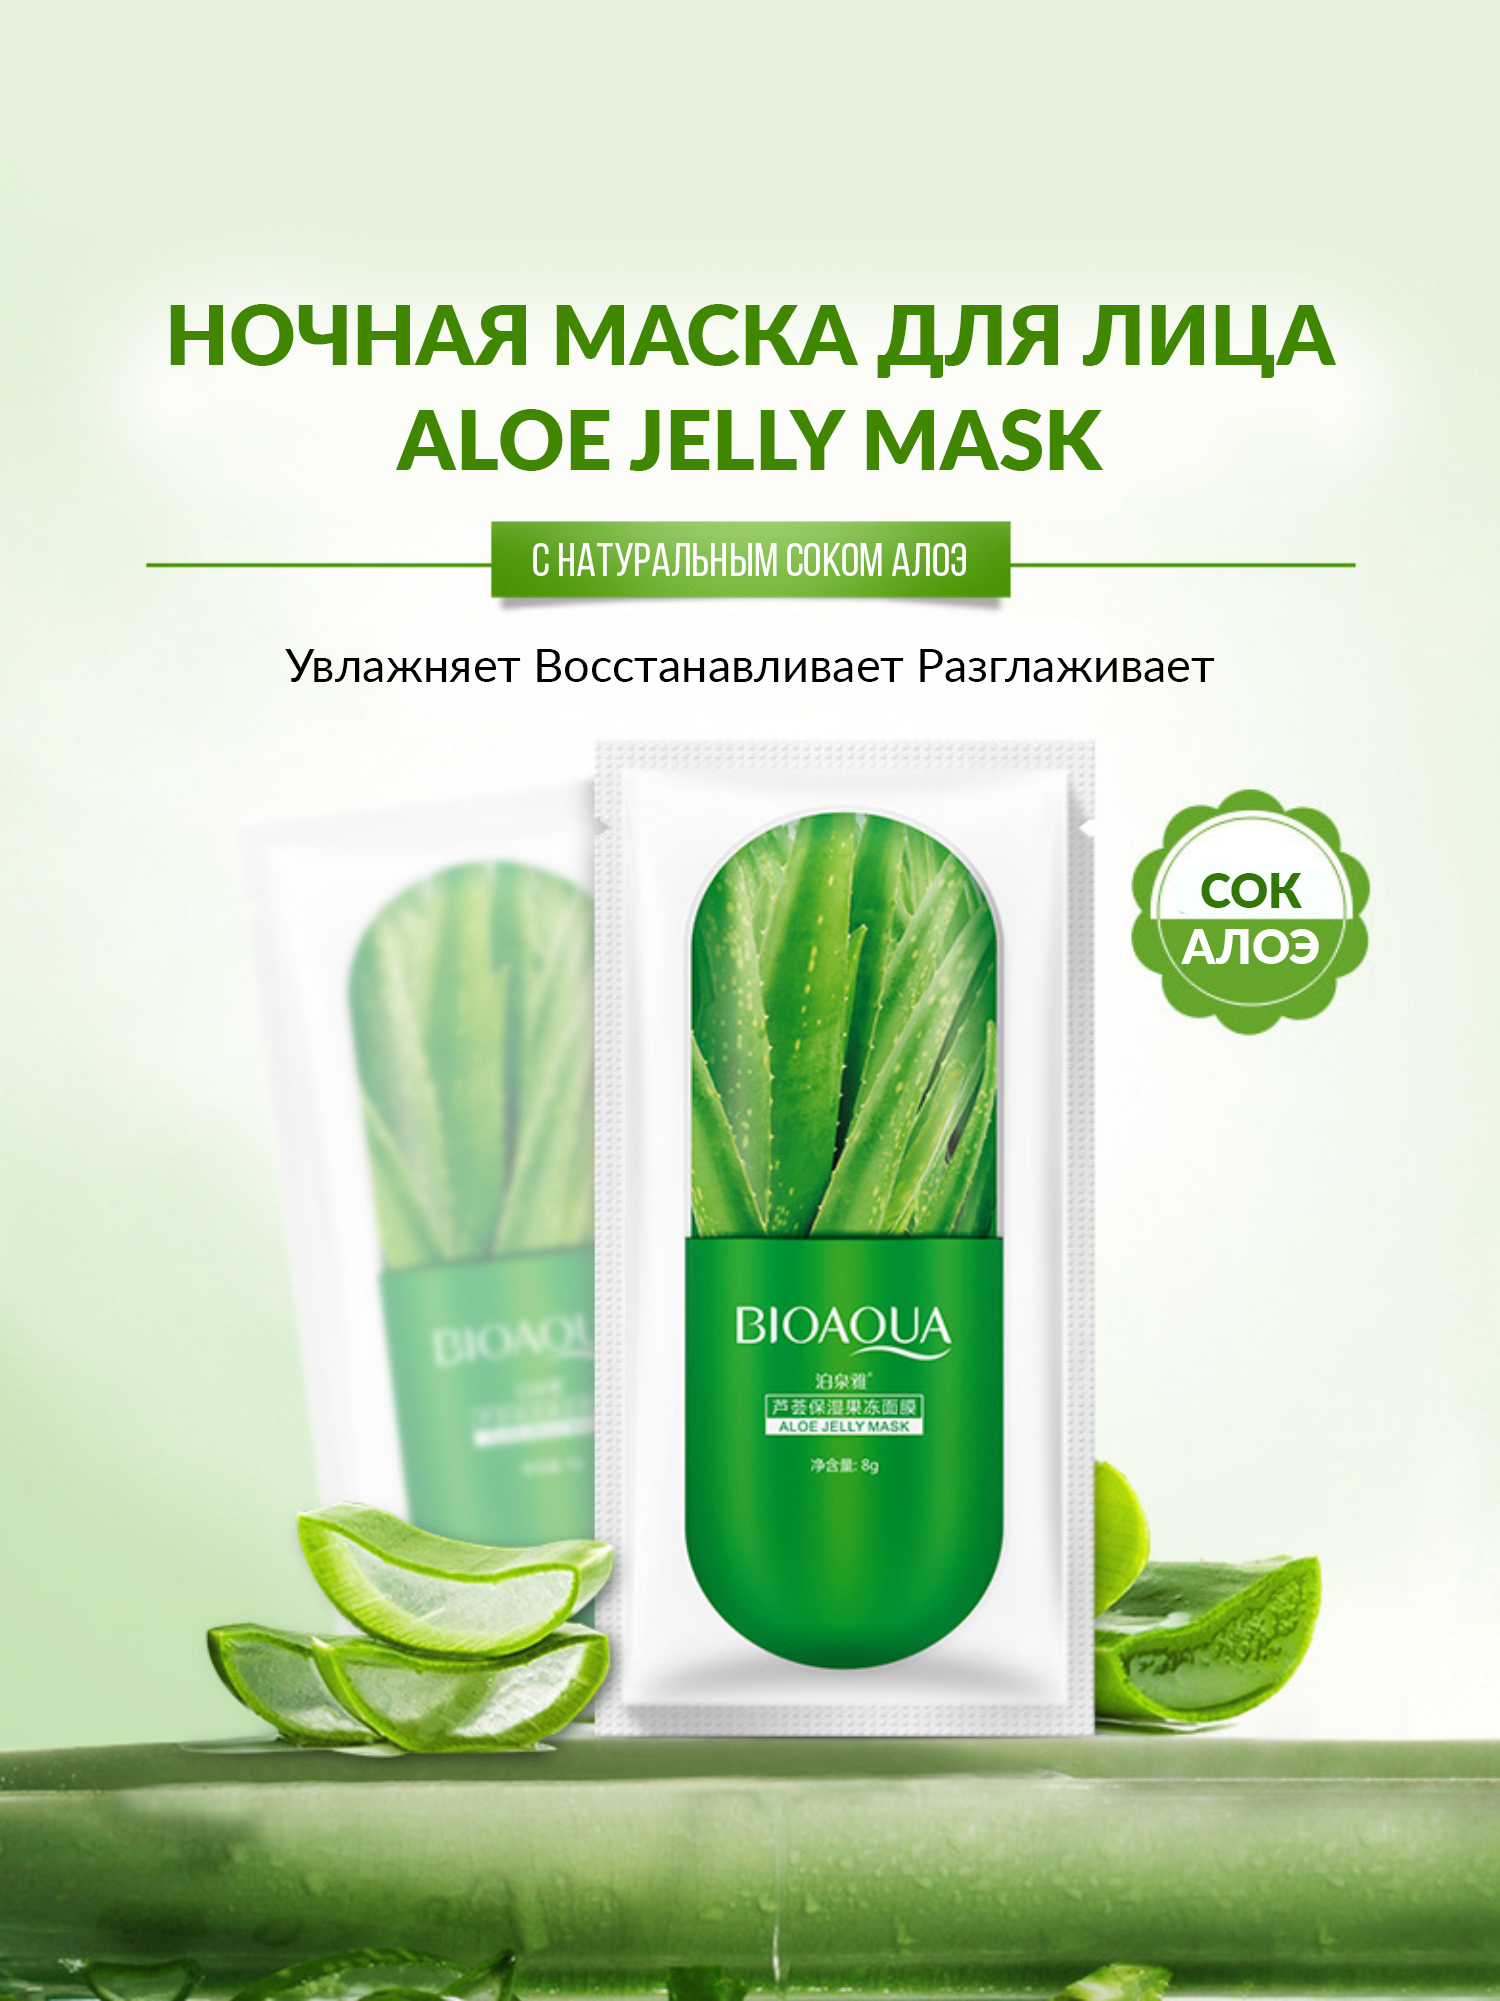 Ночная маска для лица Aloe Jelly Mask, 8гр